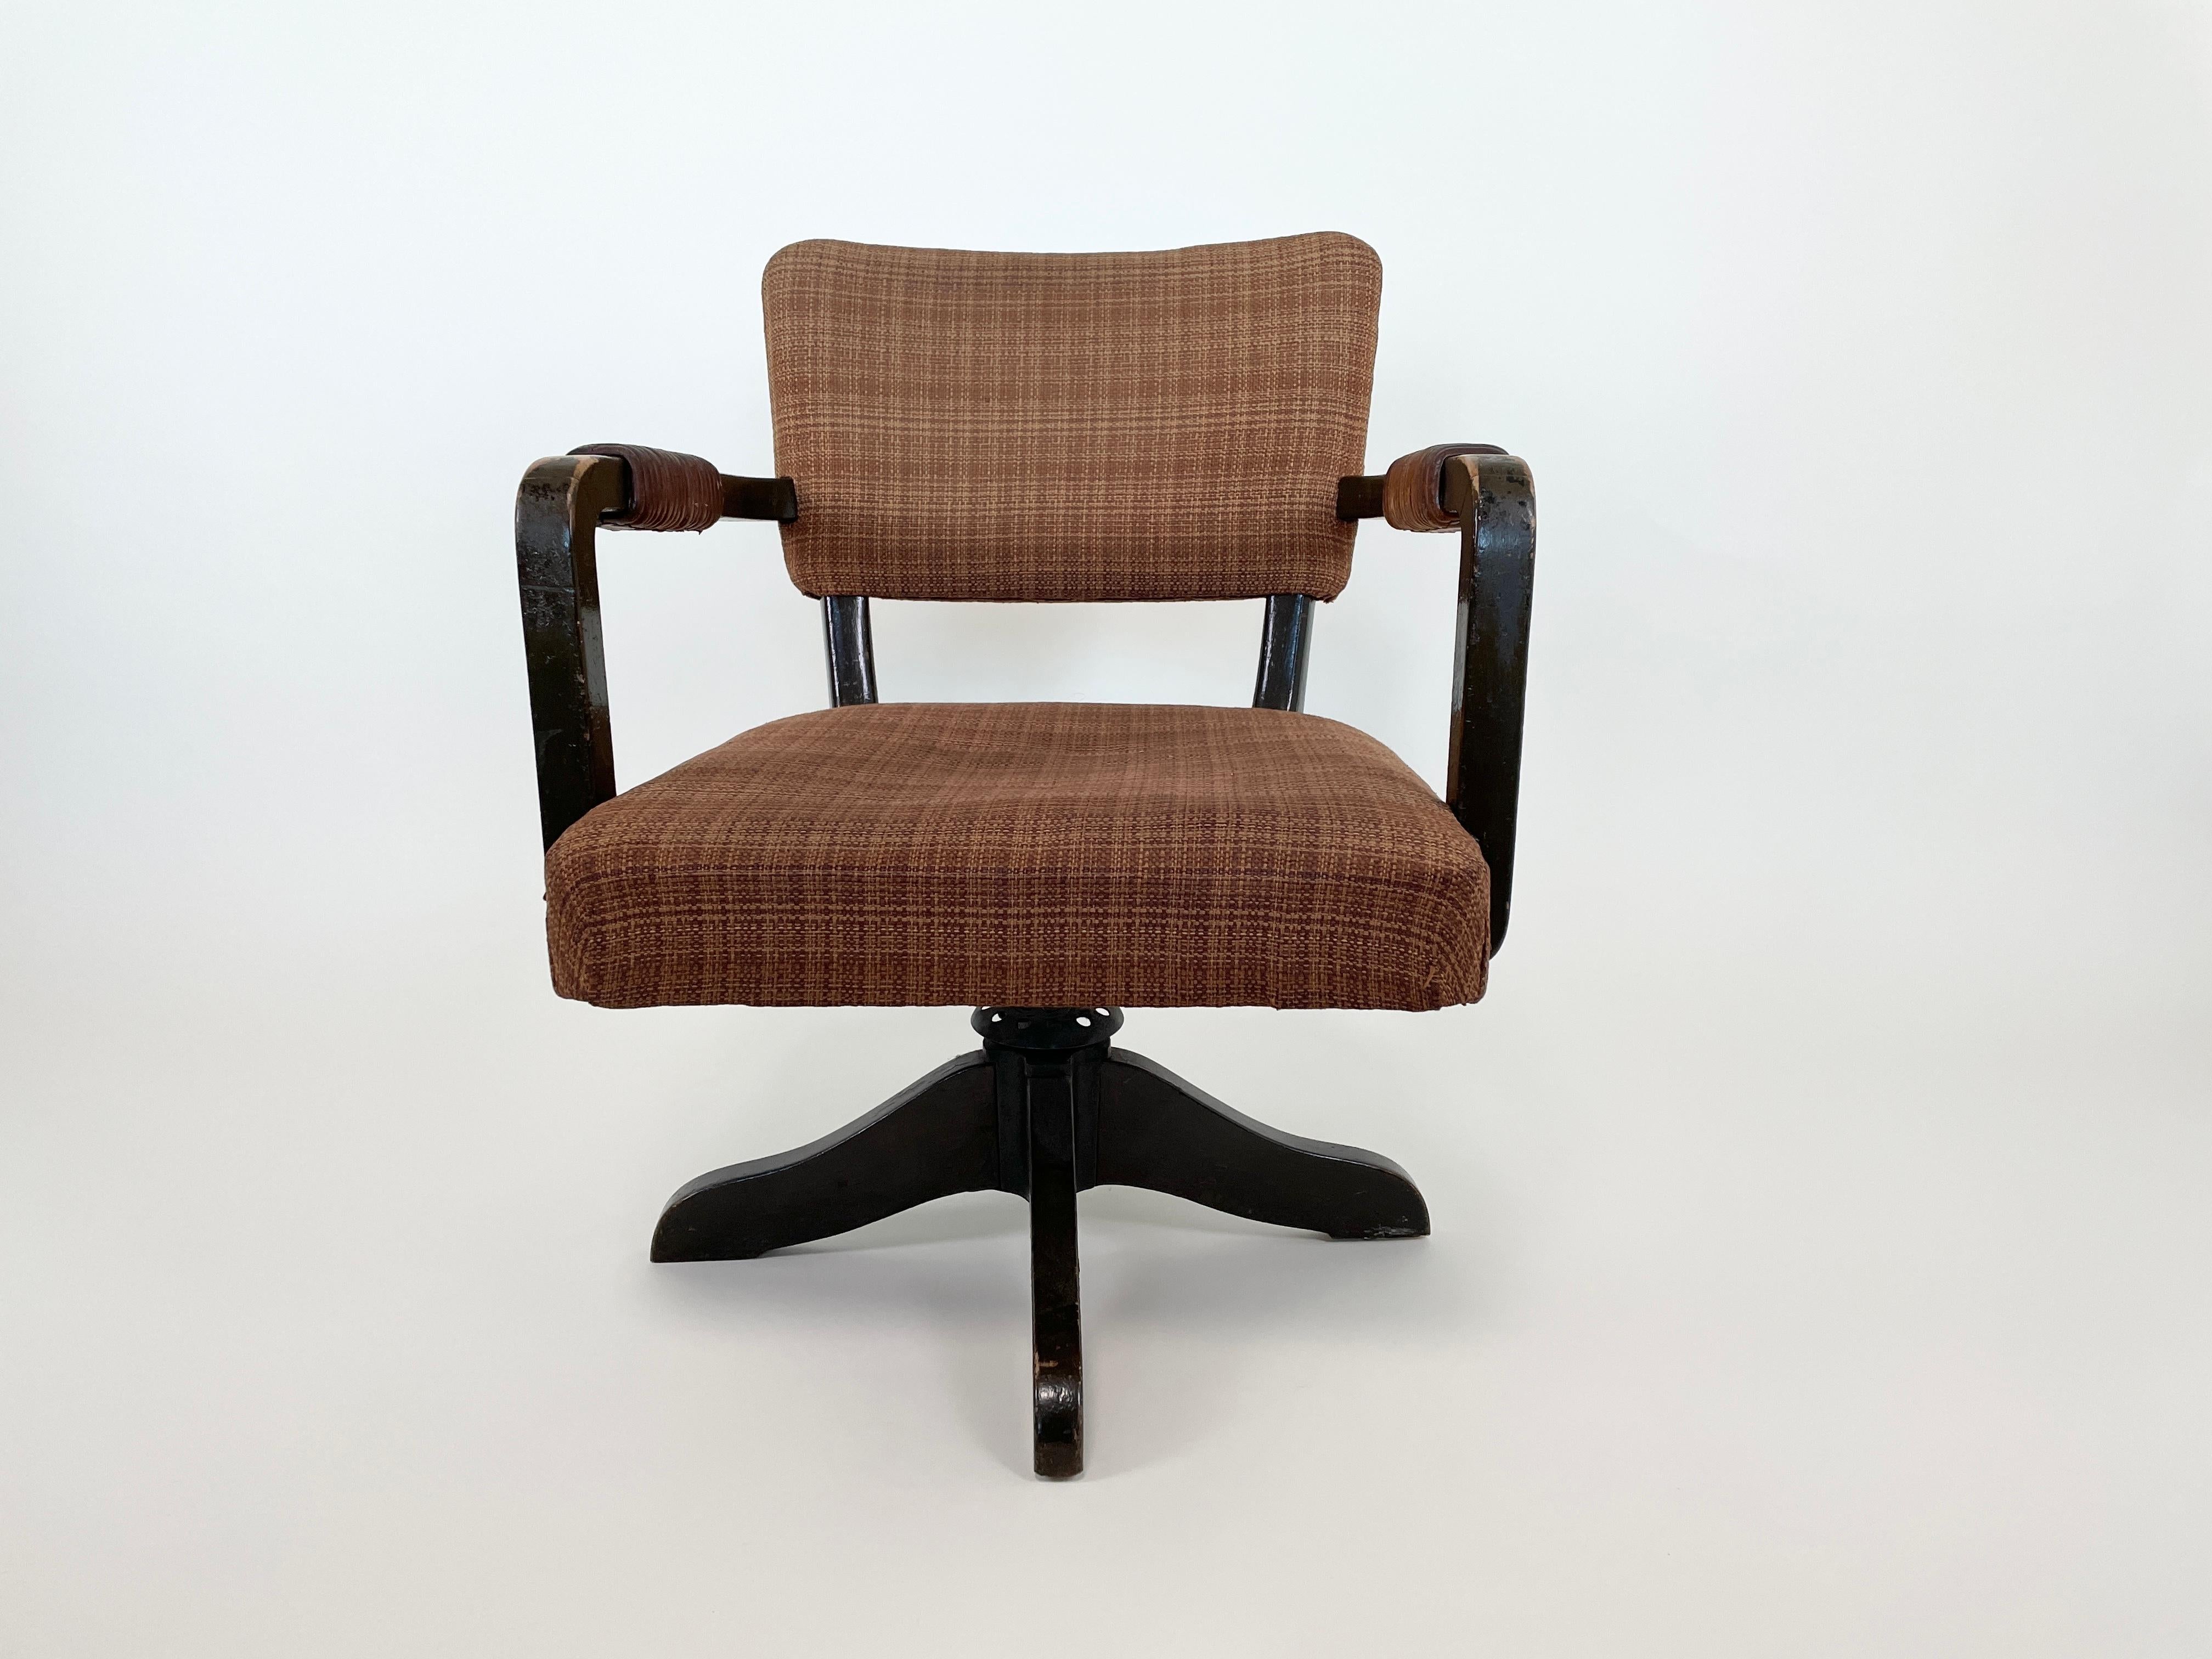 Voici la rarissime chaise pivotante Aino Aalto n° 1118, conçue entre 1935 et 1936 par l'architecte finlandais Aino Marsio-Aalto. Cette chaise est dotée de son revêtement d'origine et d'un mécanisme de réglage de la hauteur, reflétant les principes